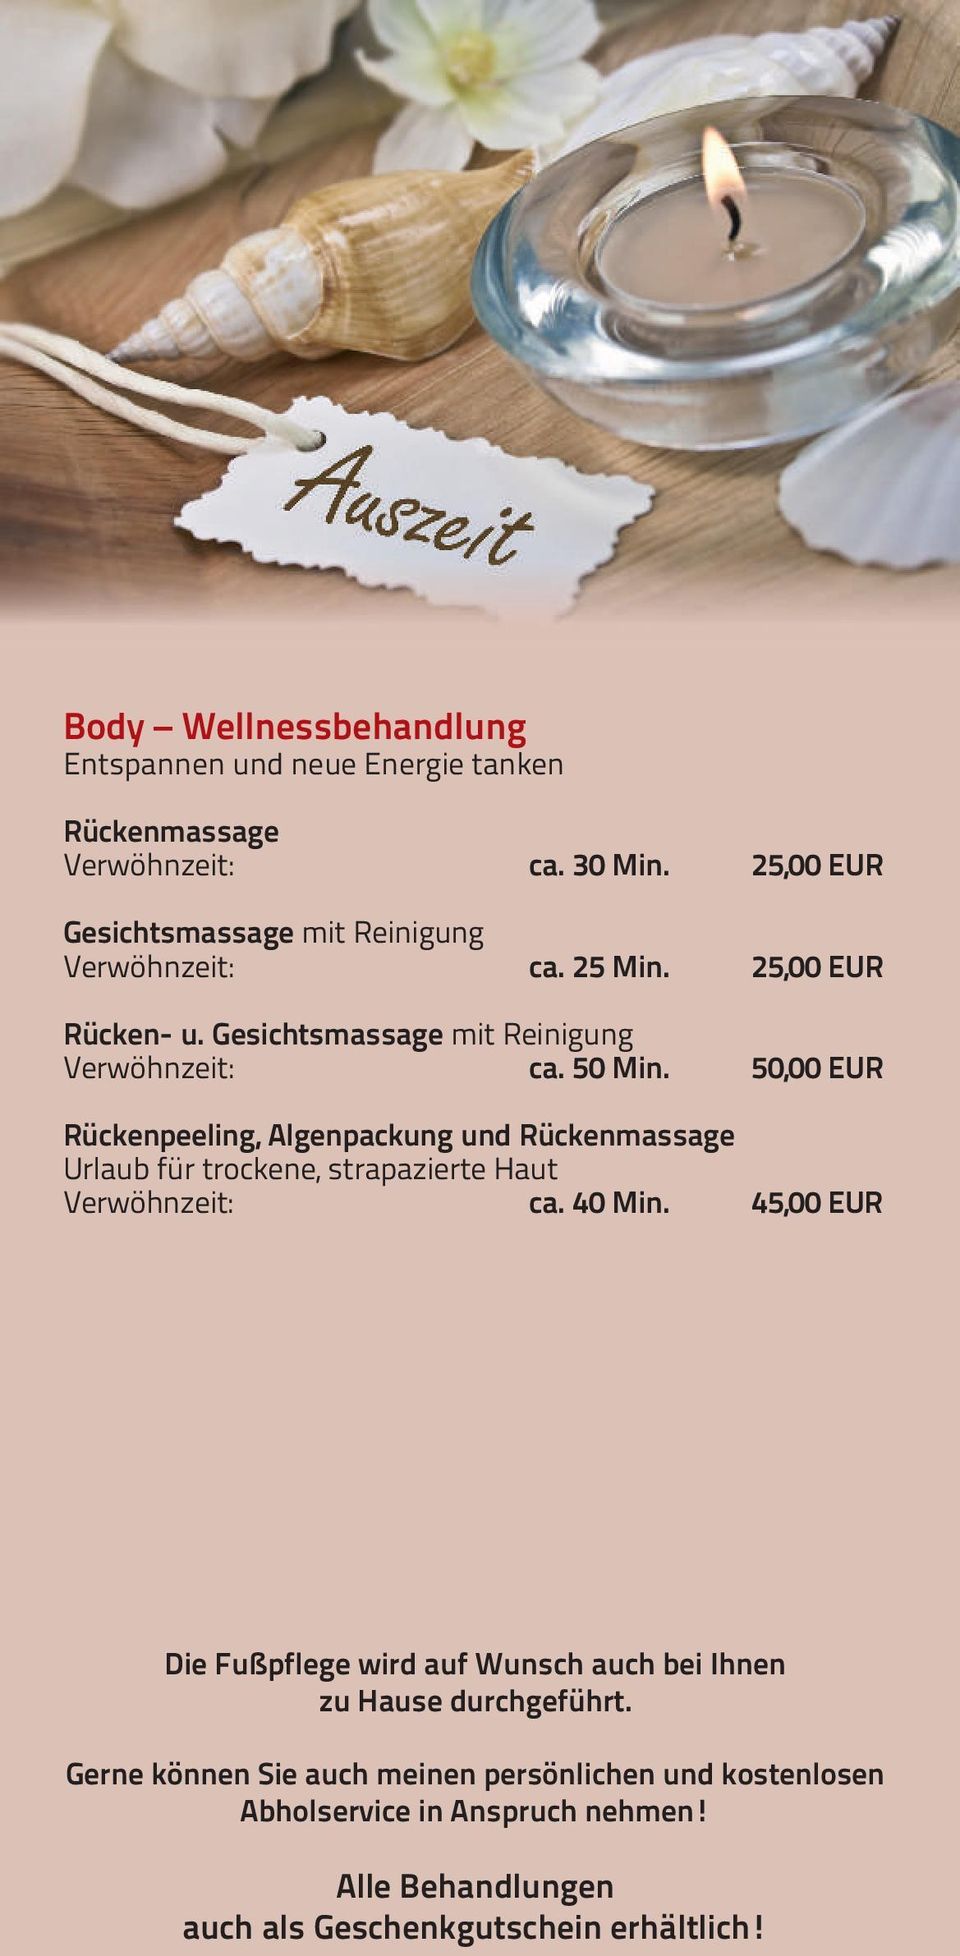 50,00 EUR Rückenpeeling, Algenpackung und Rückenmassage Urlaub für trockene, strapazierte Haut Verwöhnzeit: ca. 40 Min.